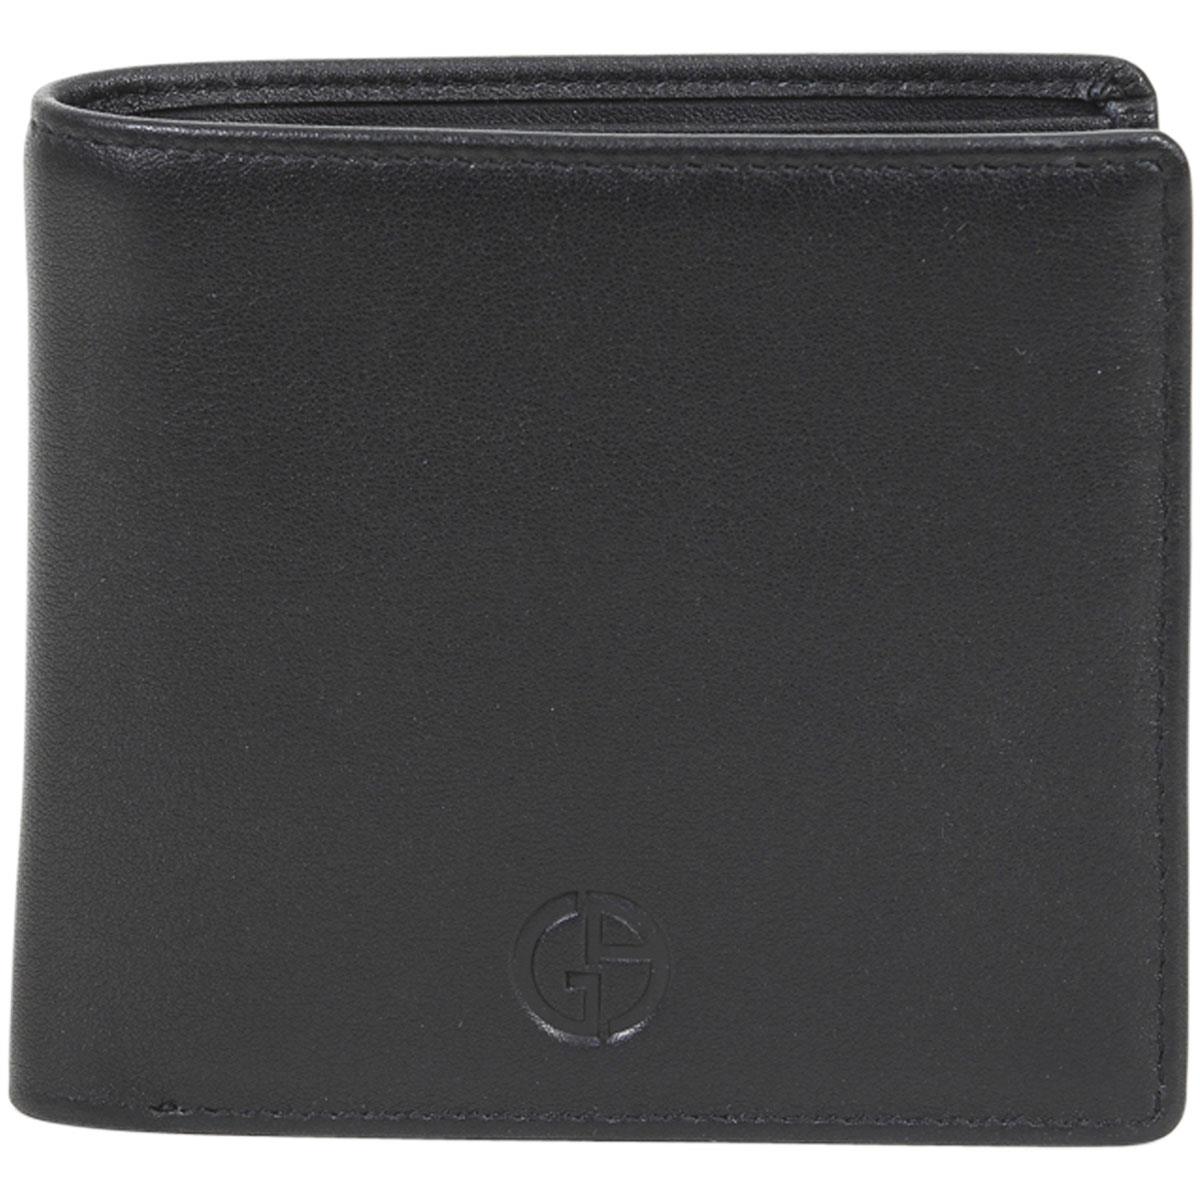 Giorgio Armani Men`s Portafoglio Leather Bi-fold Wallet Black Nappa